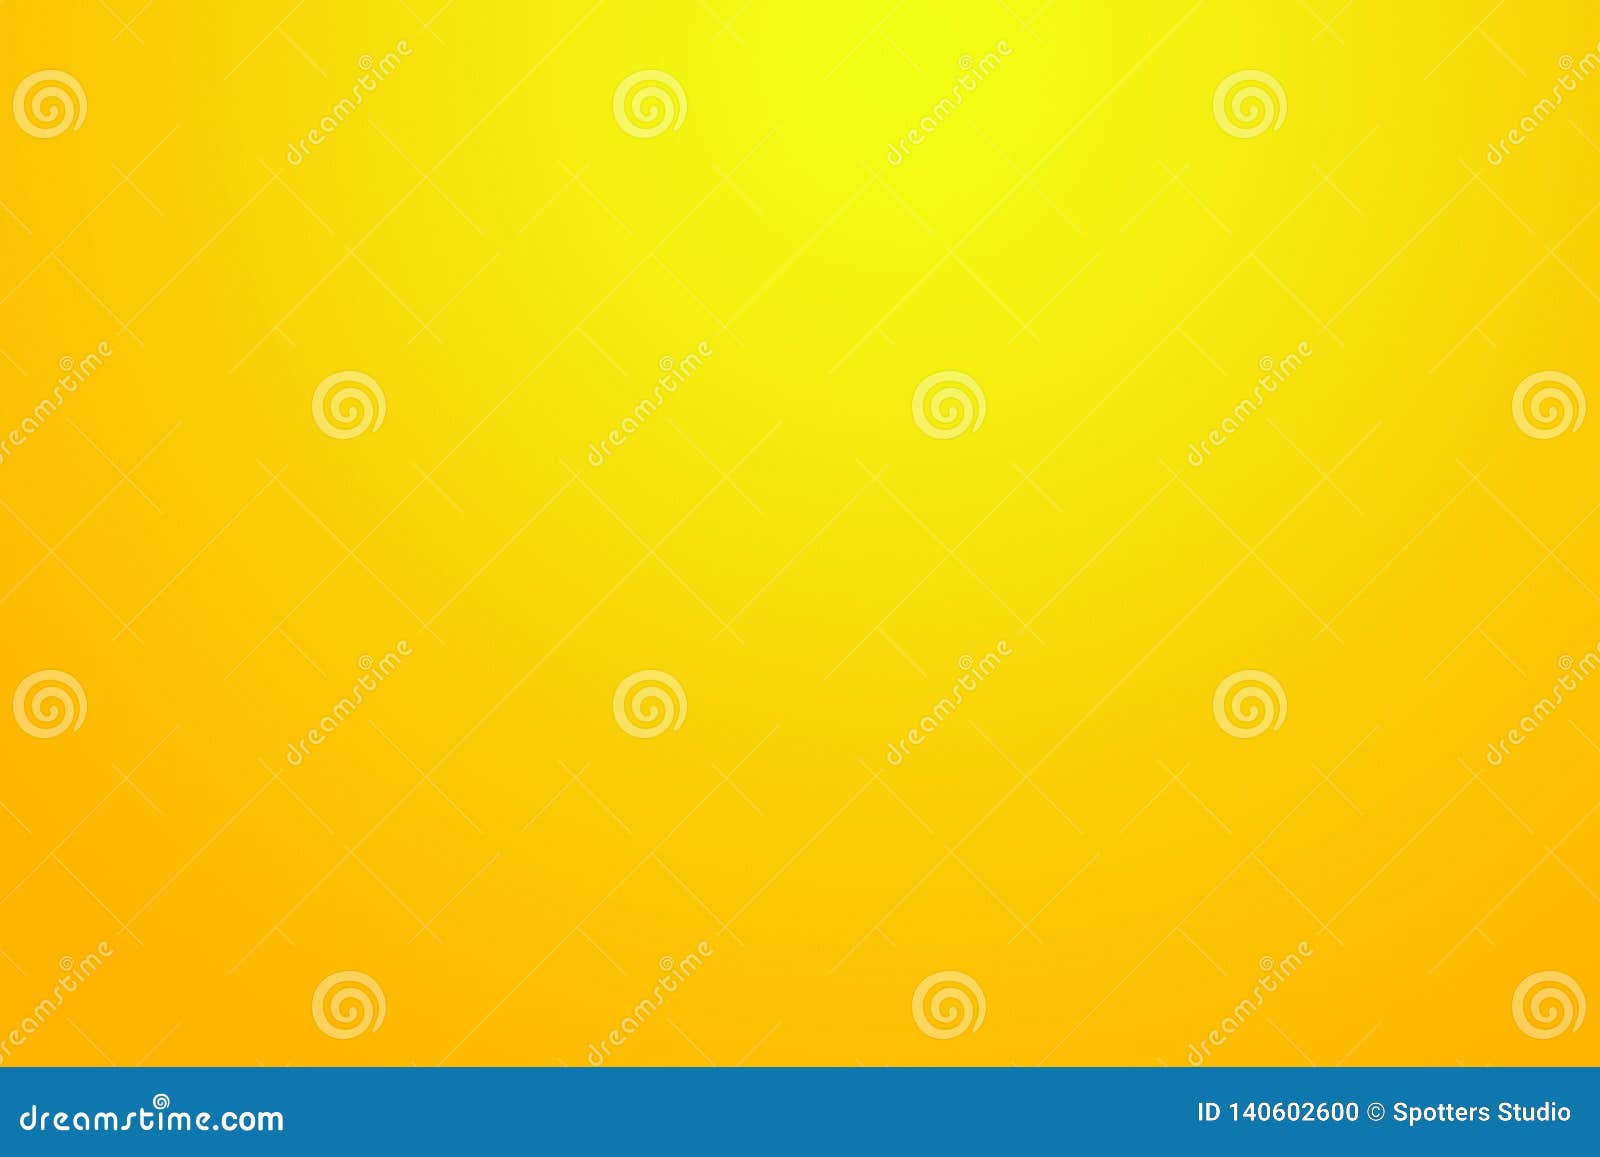 Unduh 99 Background Foto Warna Kuning Paling Keren